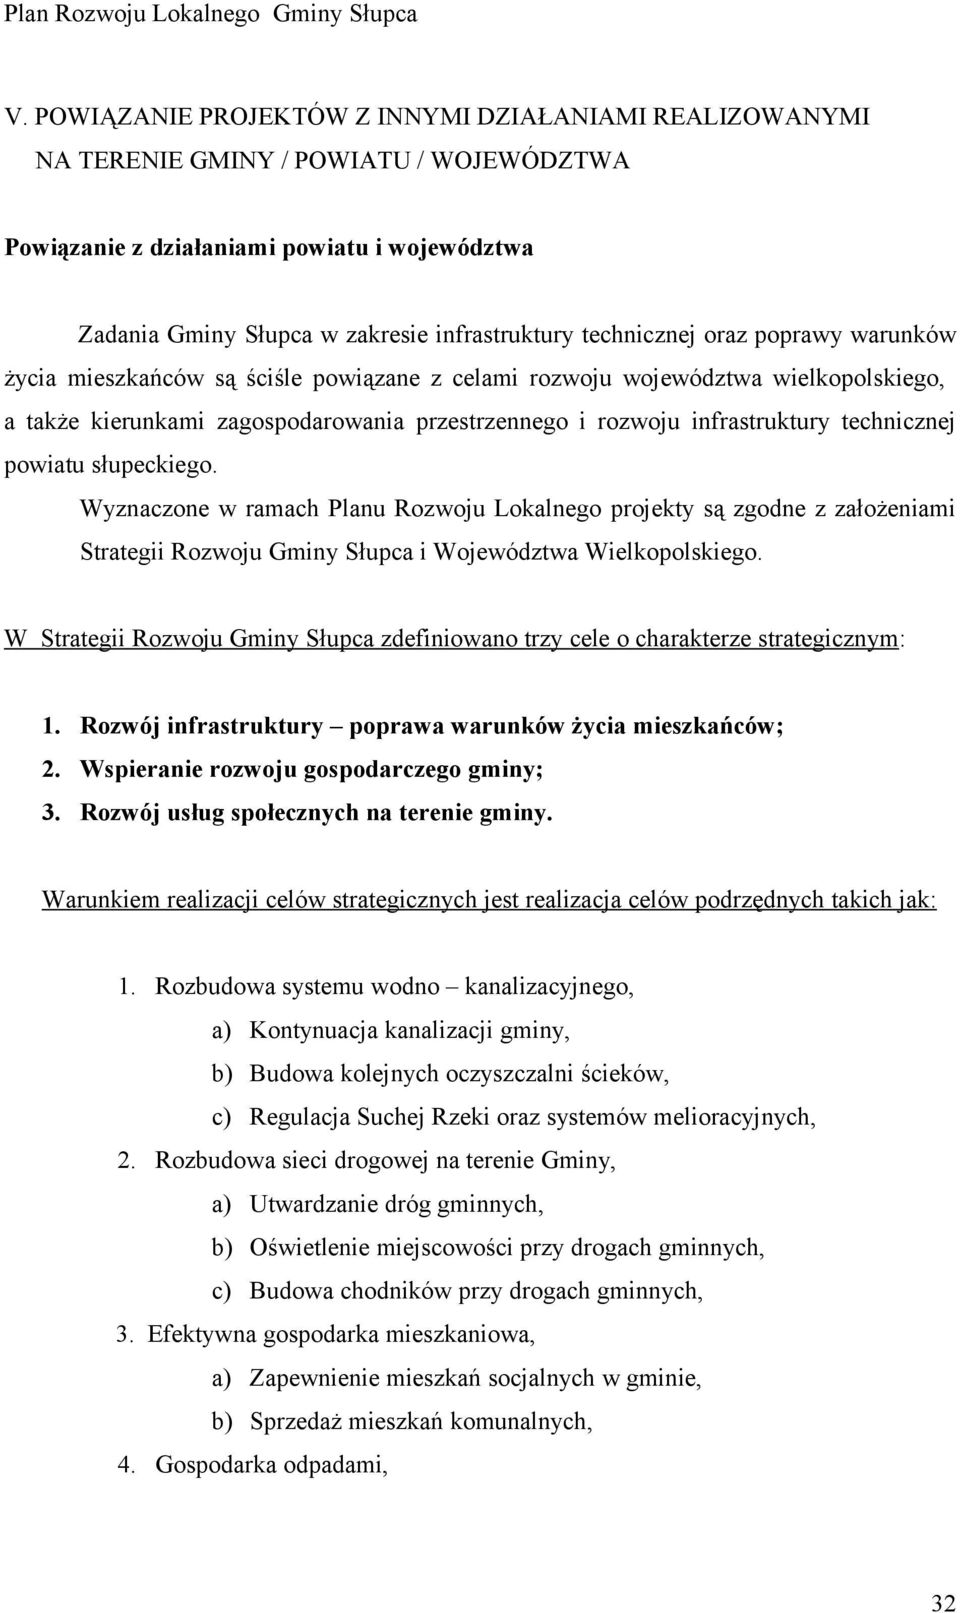 technicznej powiatu słupeckiego. Wyznaczone w ramach Planu Rozwoju Lokalnego projekty są zgodne z założeniami Strategii Rozwoju Gminy Słupca i Województwa Wielkopolskiego.